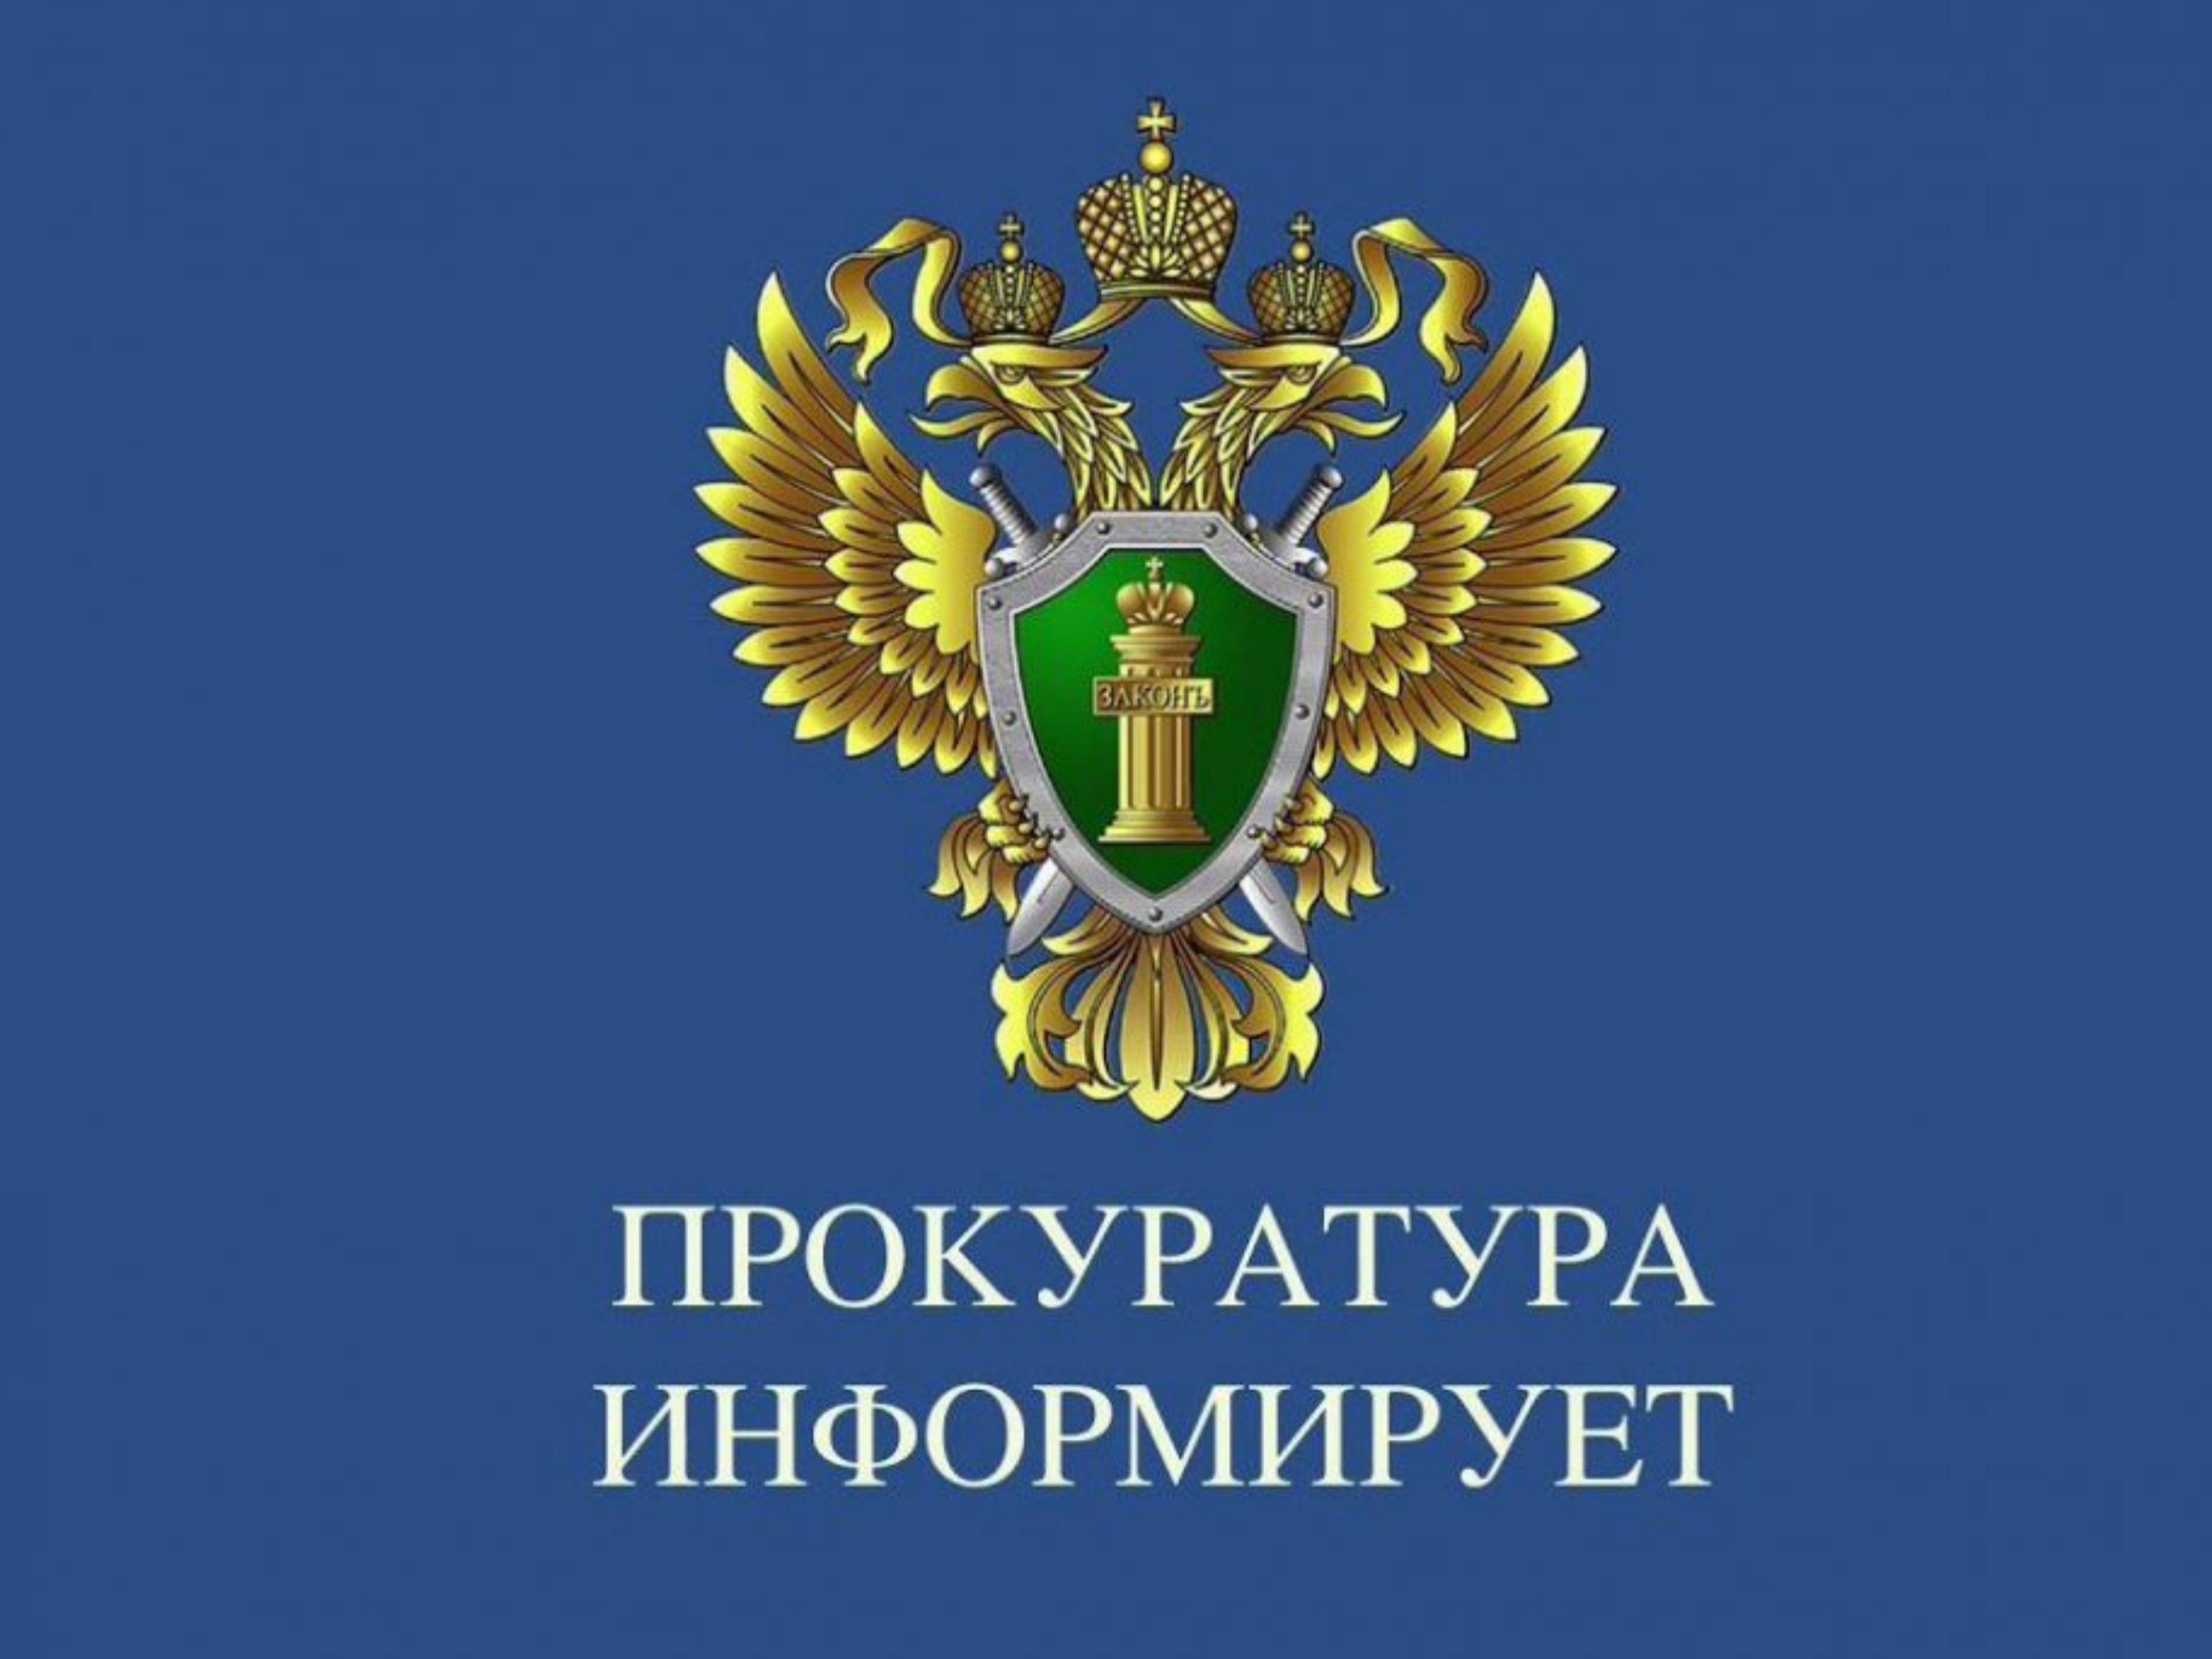 Прокуратура Цильнинского района организует день оказания бесплатной юридической помощи.